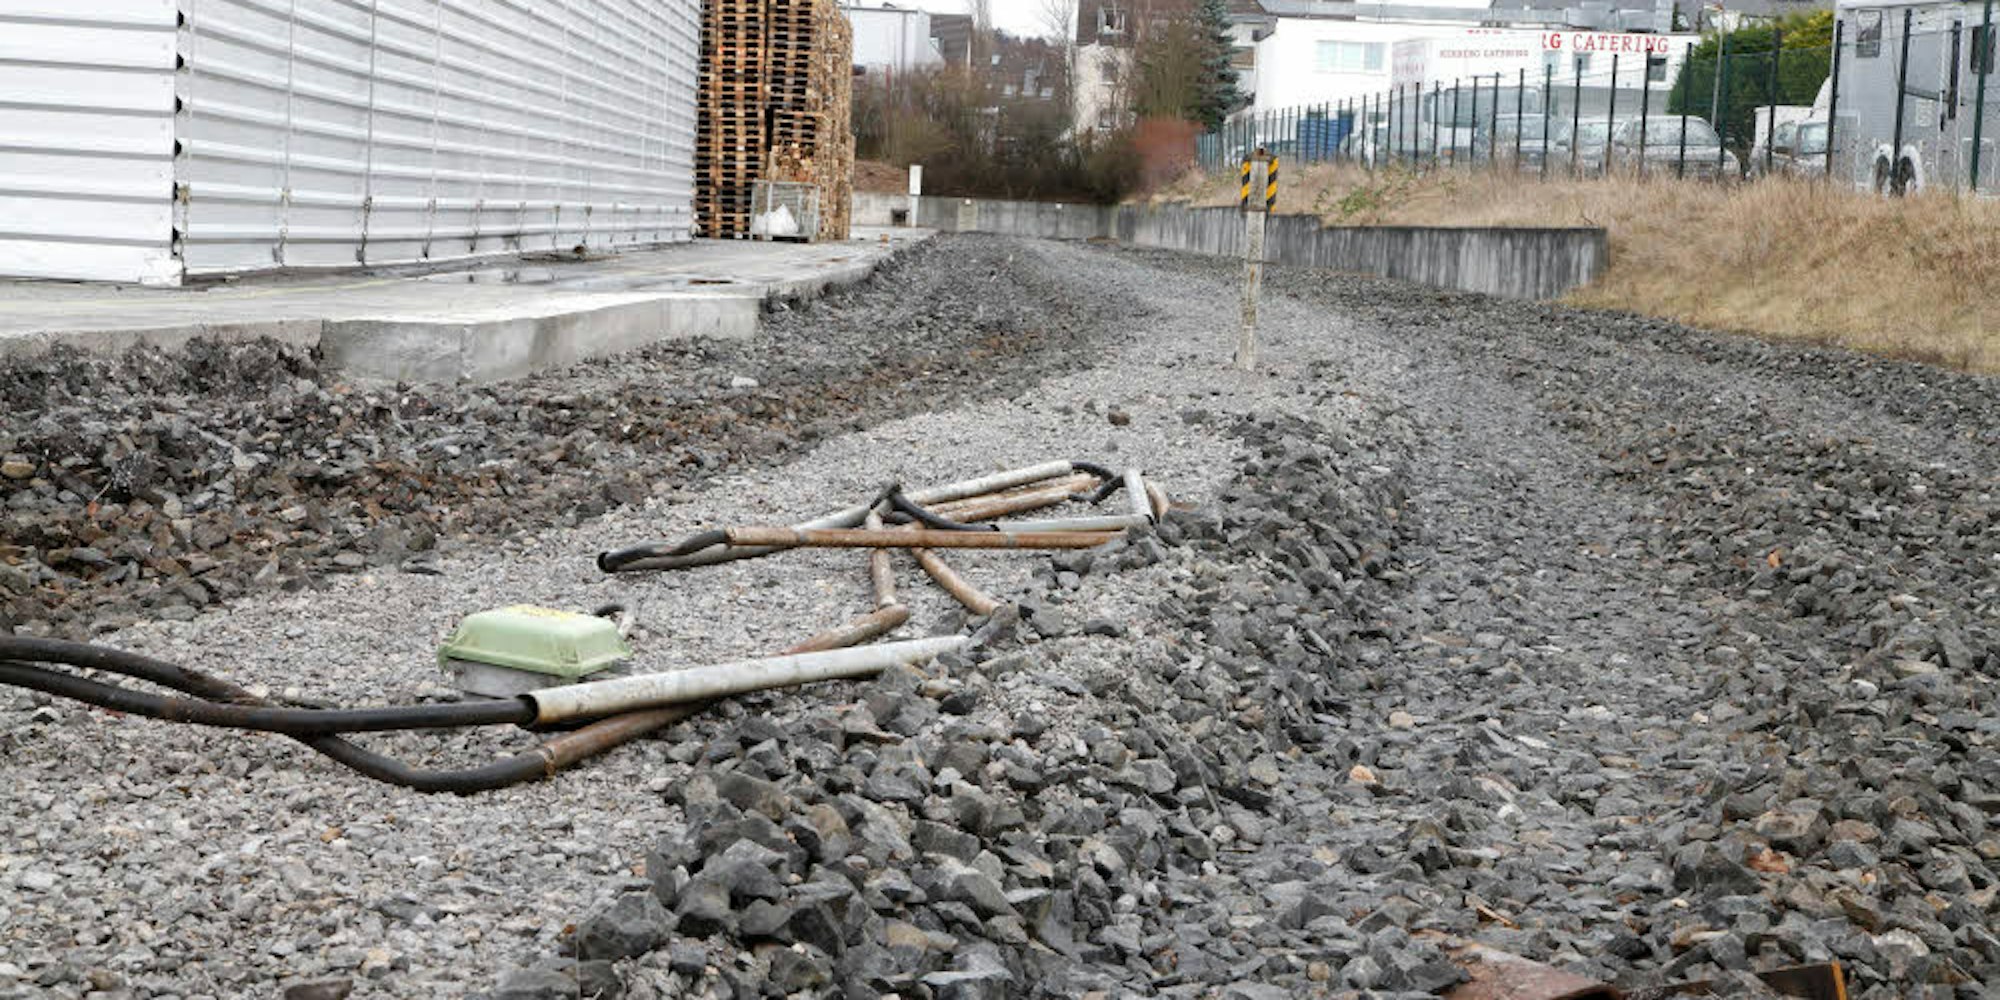 Die Gleise am Gewerbegebiet Zinkhütte wurden abgebaut, weil sie nicht mehr benötigt wurden.